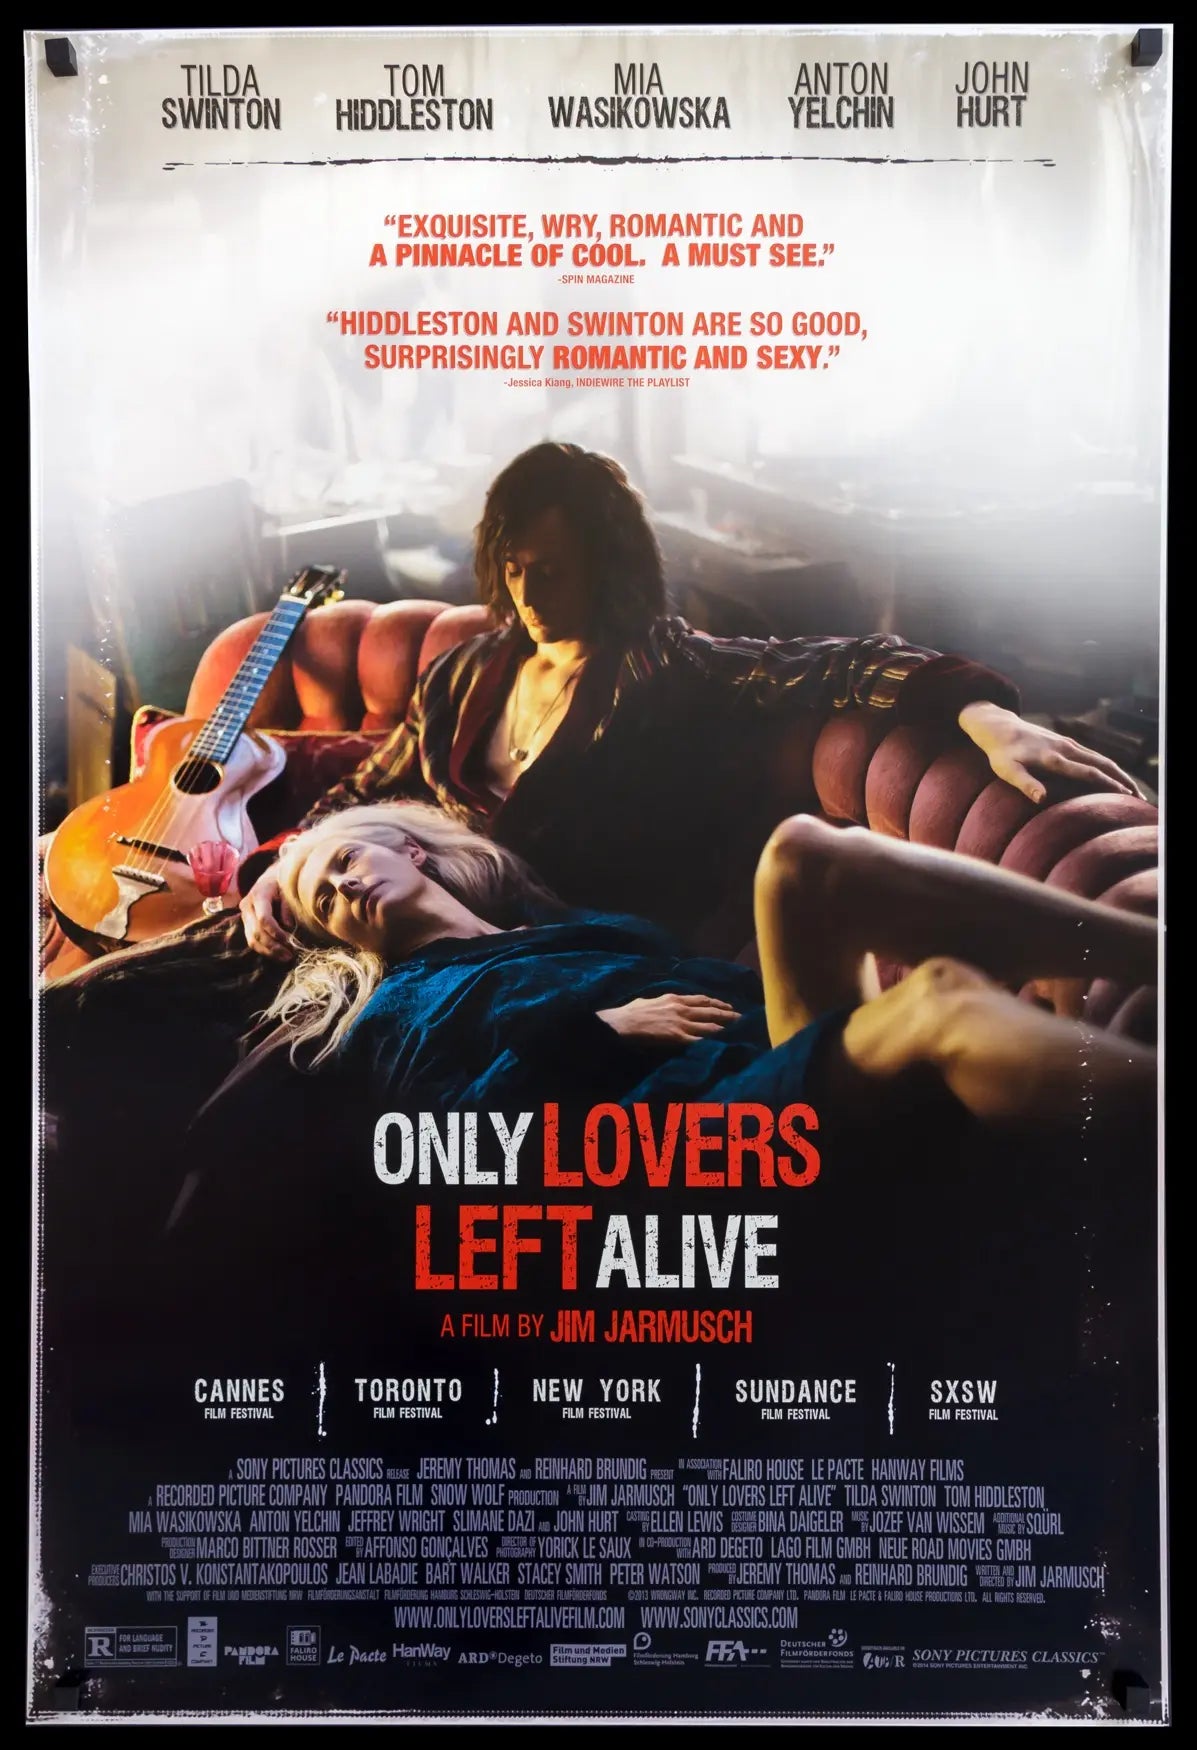 Only Lovers Left Alive (2013) original movie poster for sale at Original Film Art